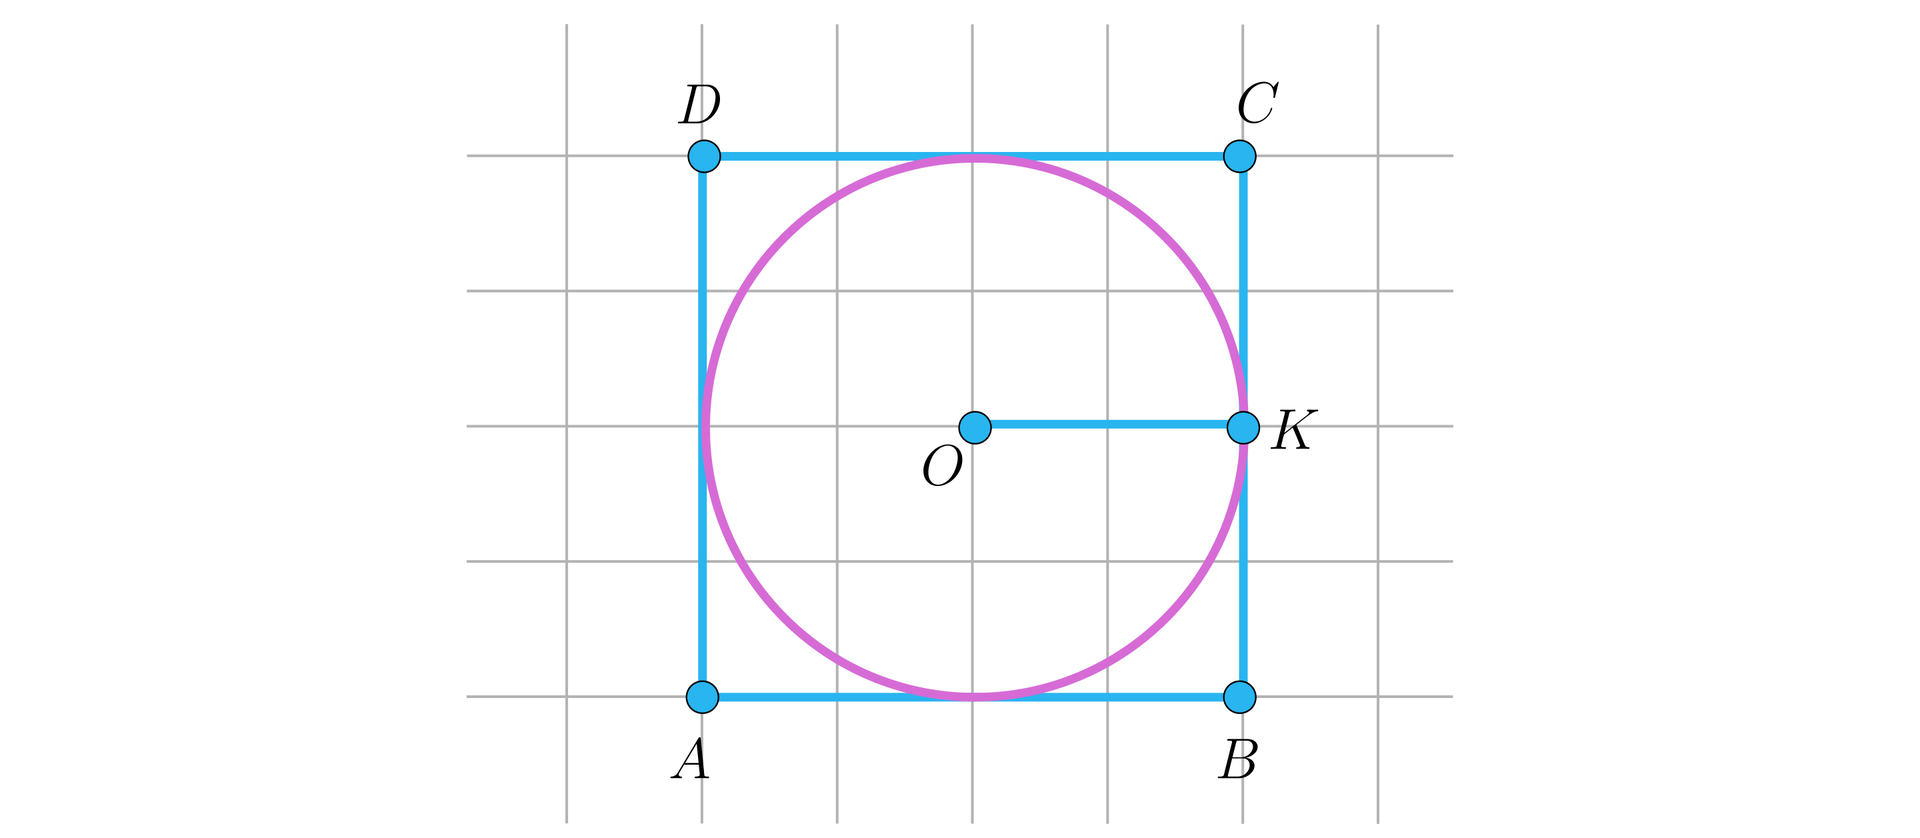 Ilustracja przedstawia pole w kratkę. Na płaszczyźnie narysowano kwadrat A B C D, w który wpisano okrąg o środku w punkcie O. Na boku CB zaznaczono punkt K, stanowiący środek boku oraz punkt styczności okręgu z kwadratem. Zaznaczono odcinek łączący środek okręgu z punktem K.